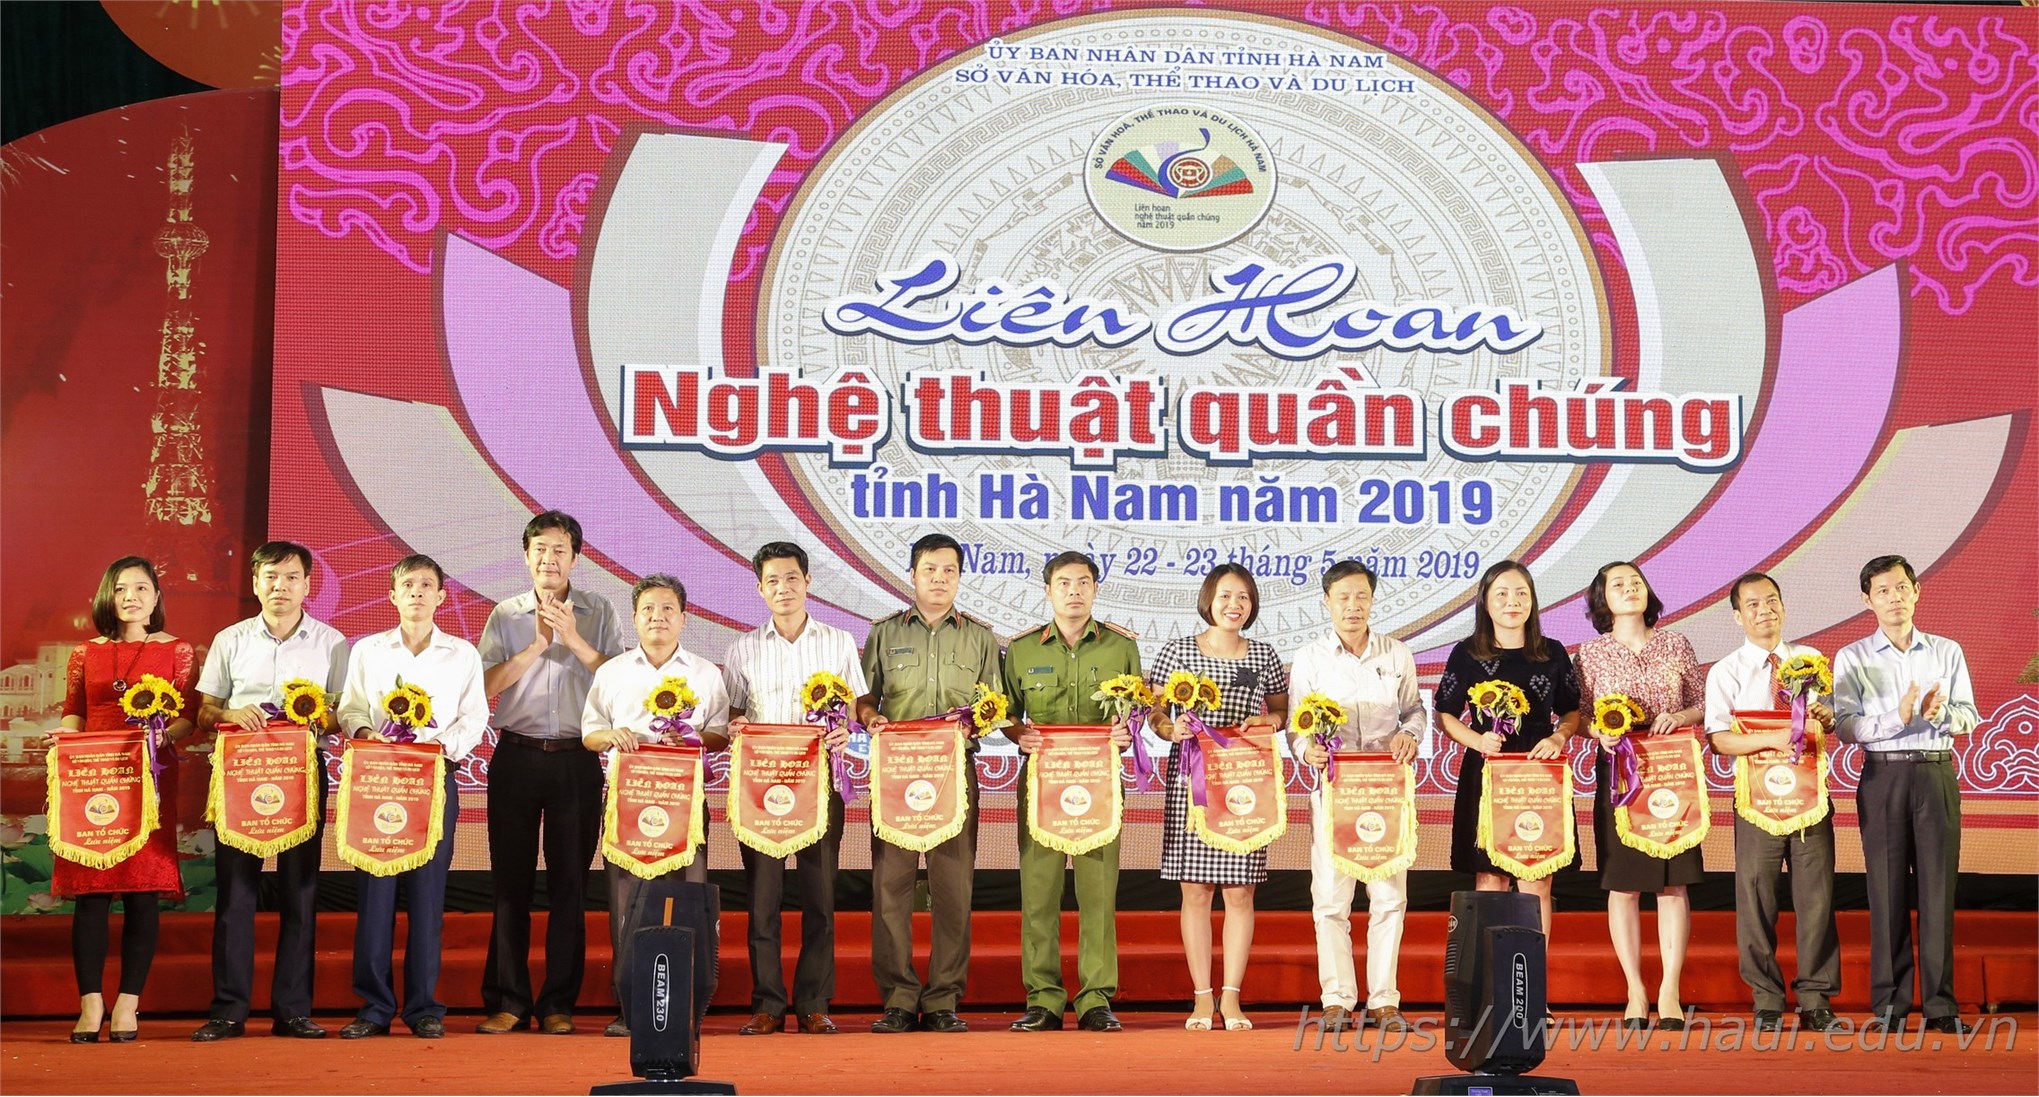 Trường Đại học Công nghiệp Hà Nội tham gia Liên hoan Nghệ thuật Quần chúng tỉnh Hà Nam năm 2019